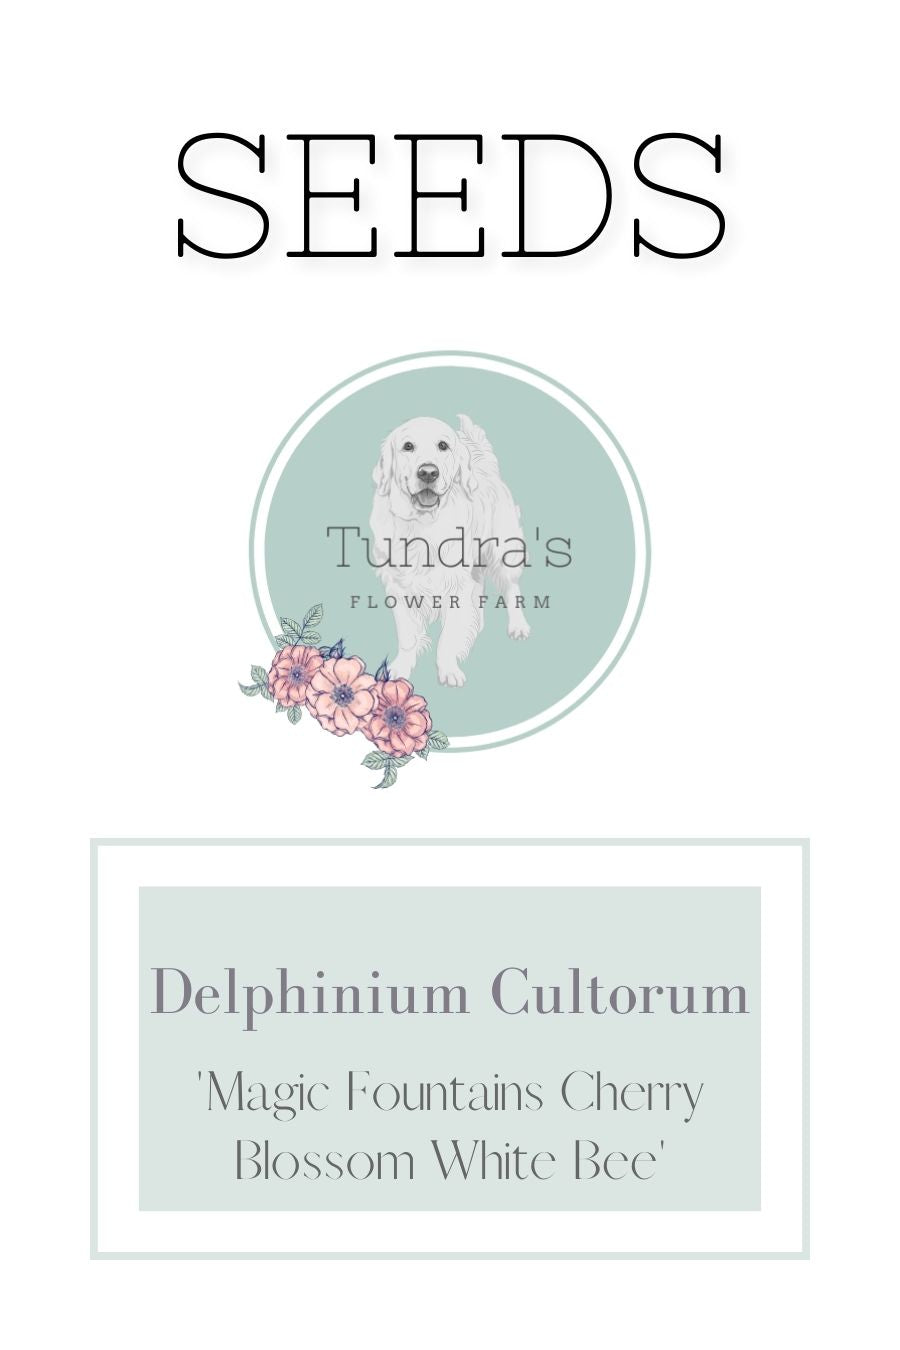 Delphinium Cultorum Seeds - Magic Fountains Cherry Blossom